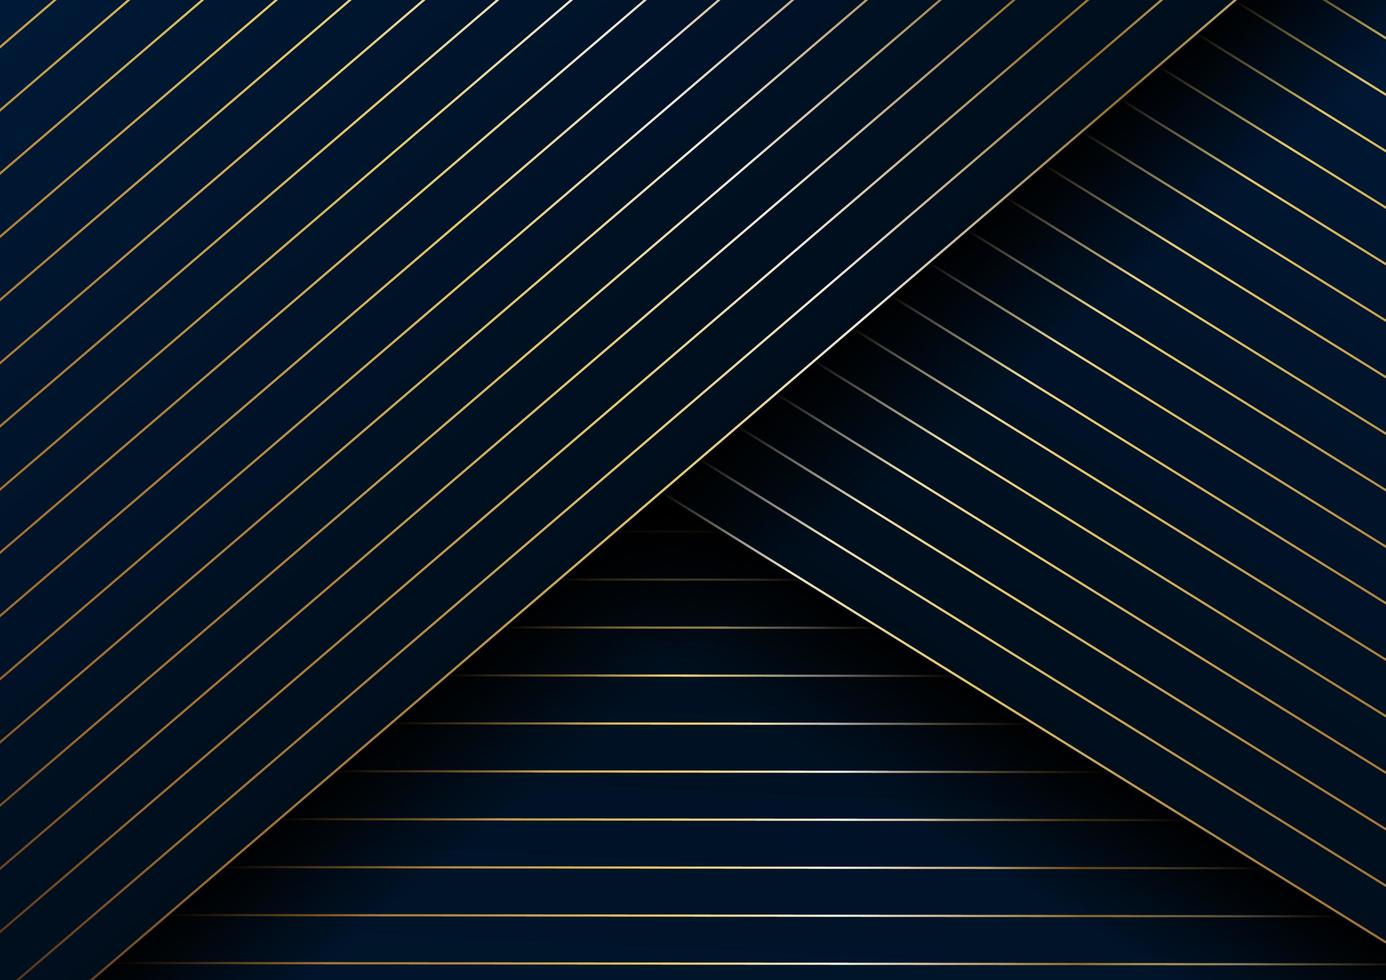 abstrakt guldlinjer diagonalt mönster överlappar lager på mörkblå bakgrund och konsistens. vektor